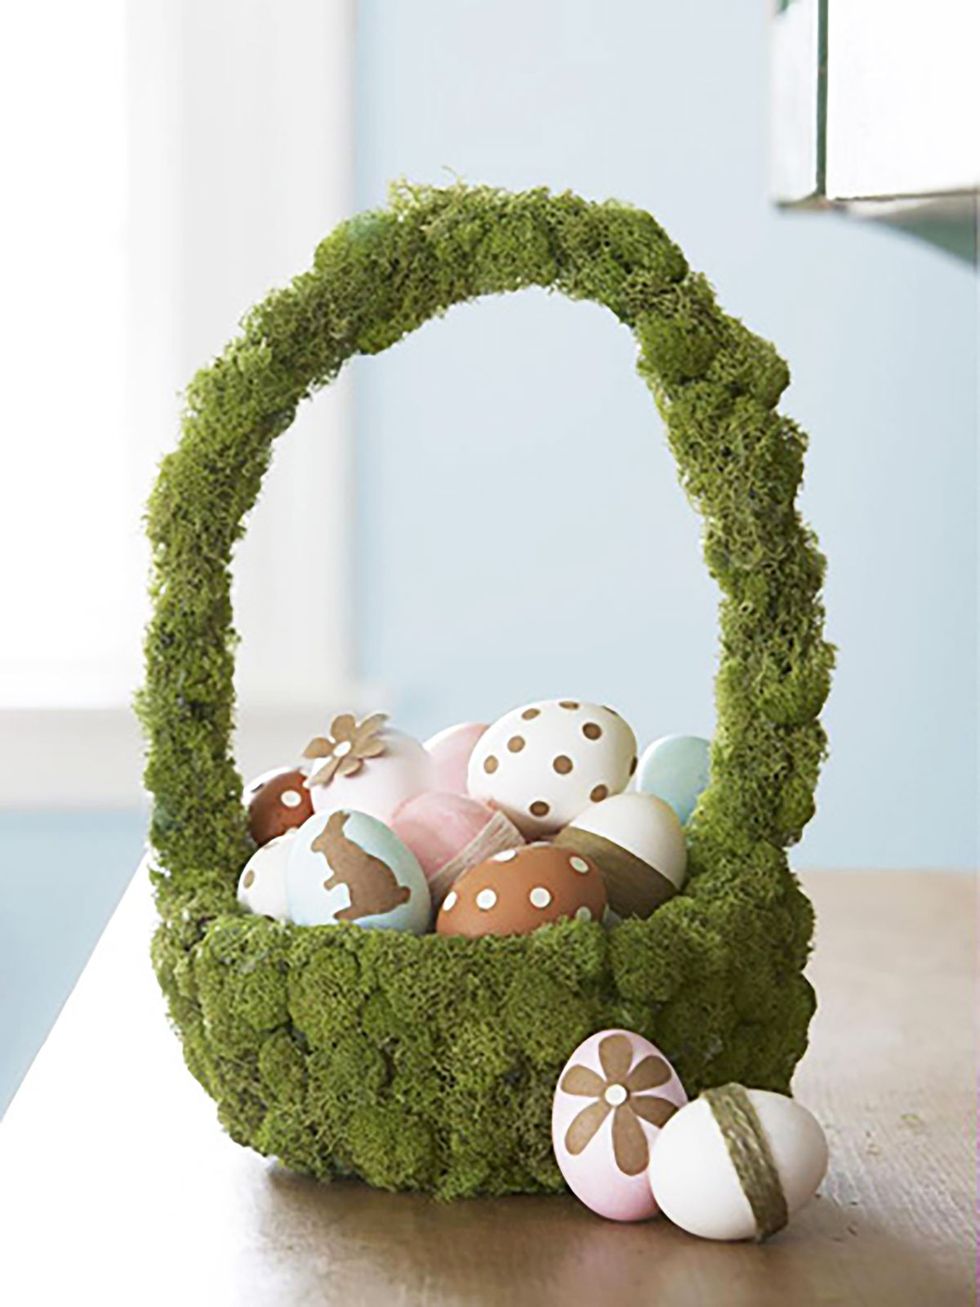 Green, Grass, Easter, Baby toys, Easter egg, Plant, Moss, Easter bunny, Crochet, Non-vascular land plant, 